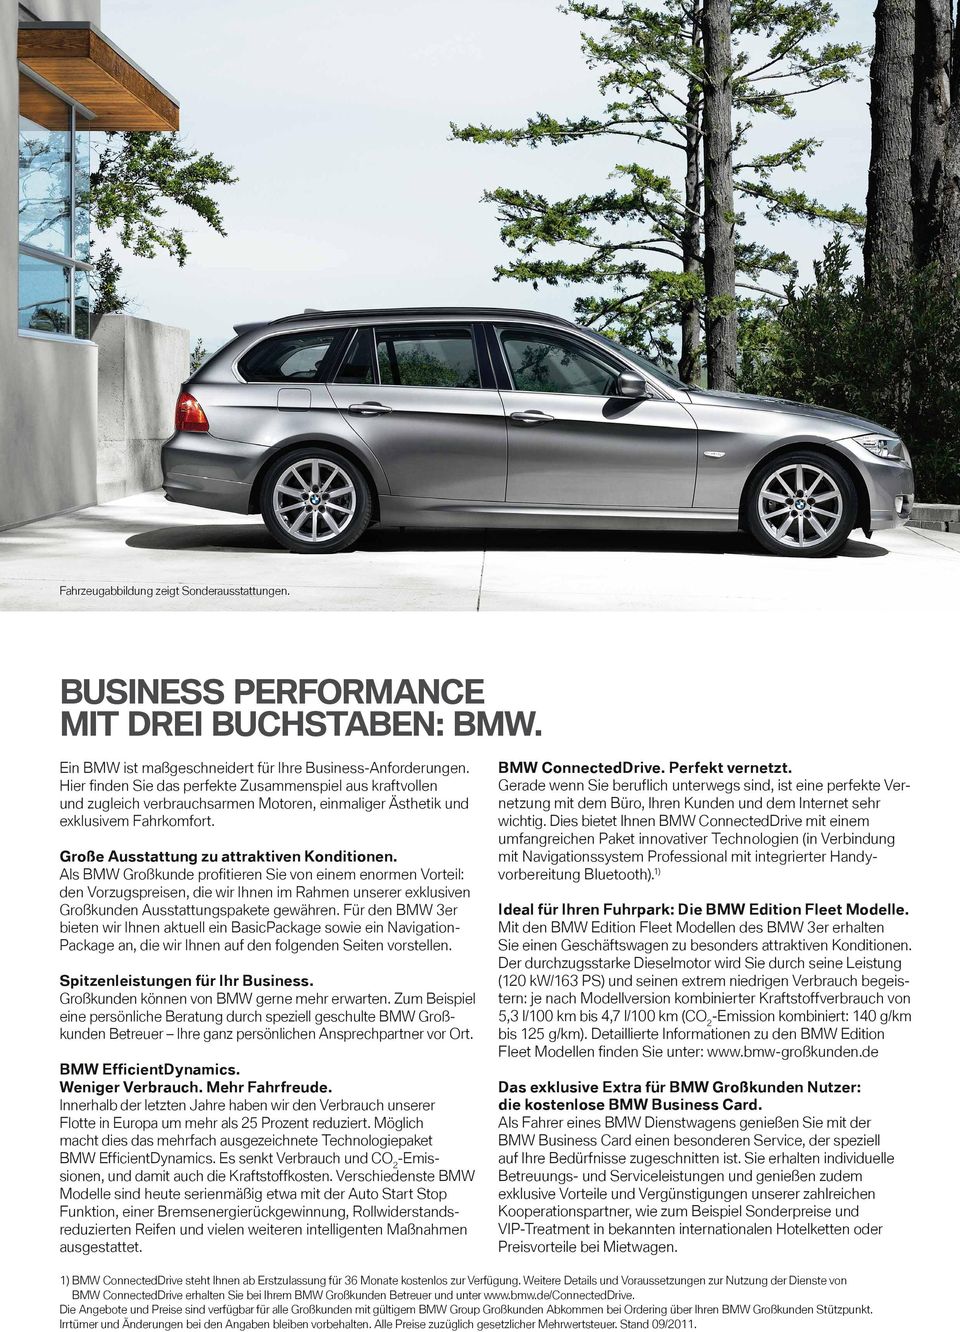 Als BMW Großkunde profitieren Sie von einem enormen Vorteil: den Vorzugspreisen, die wir Ihnen im Rahmen unserer exklusiven Großkunden Ausstattungspakete gewähren.